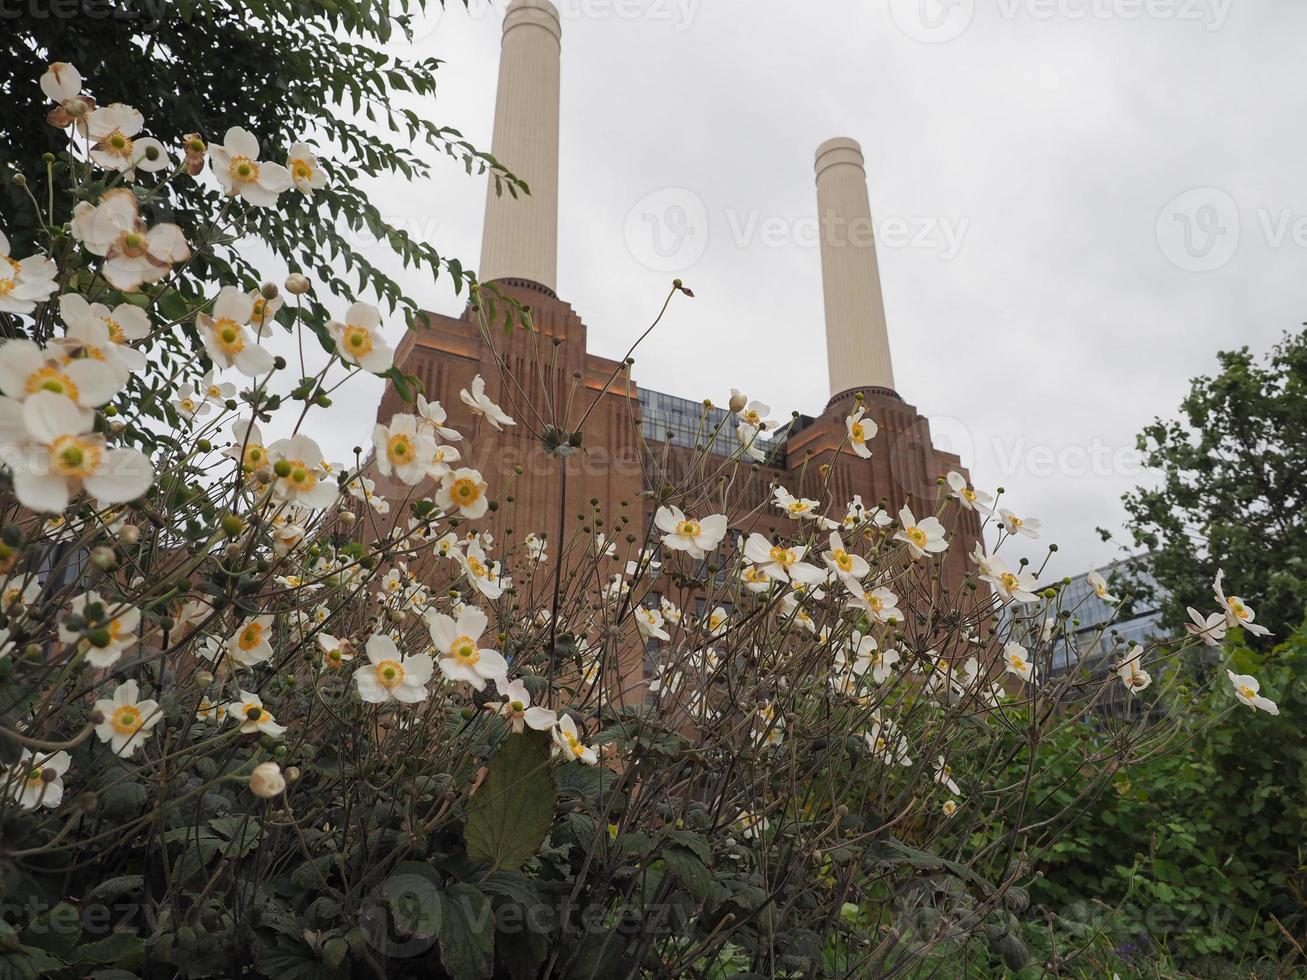 Battsea Power Station in Londen foto